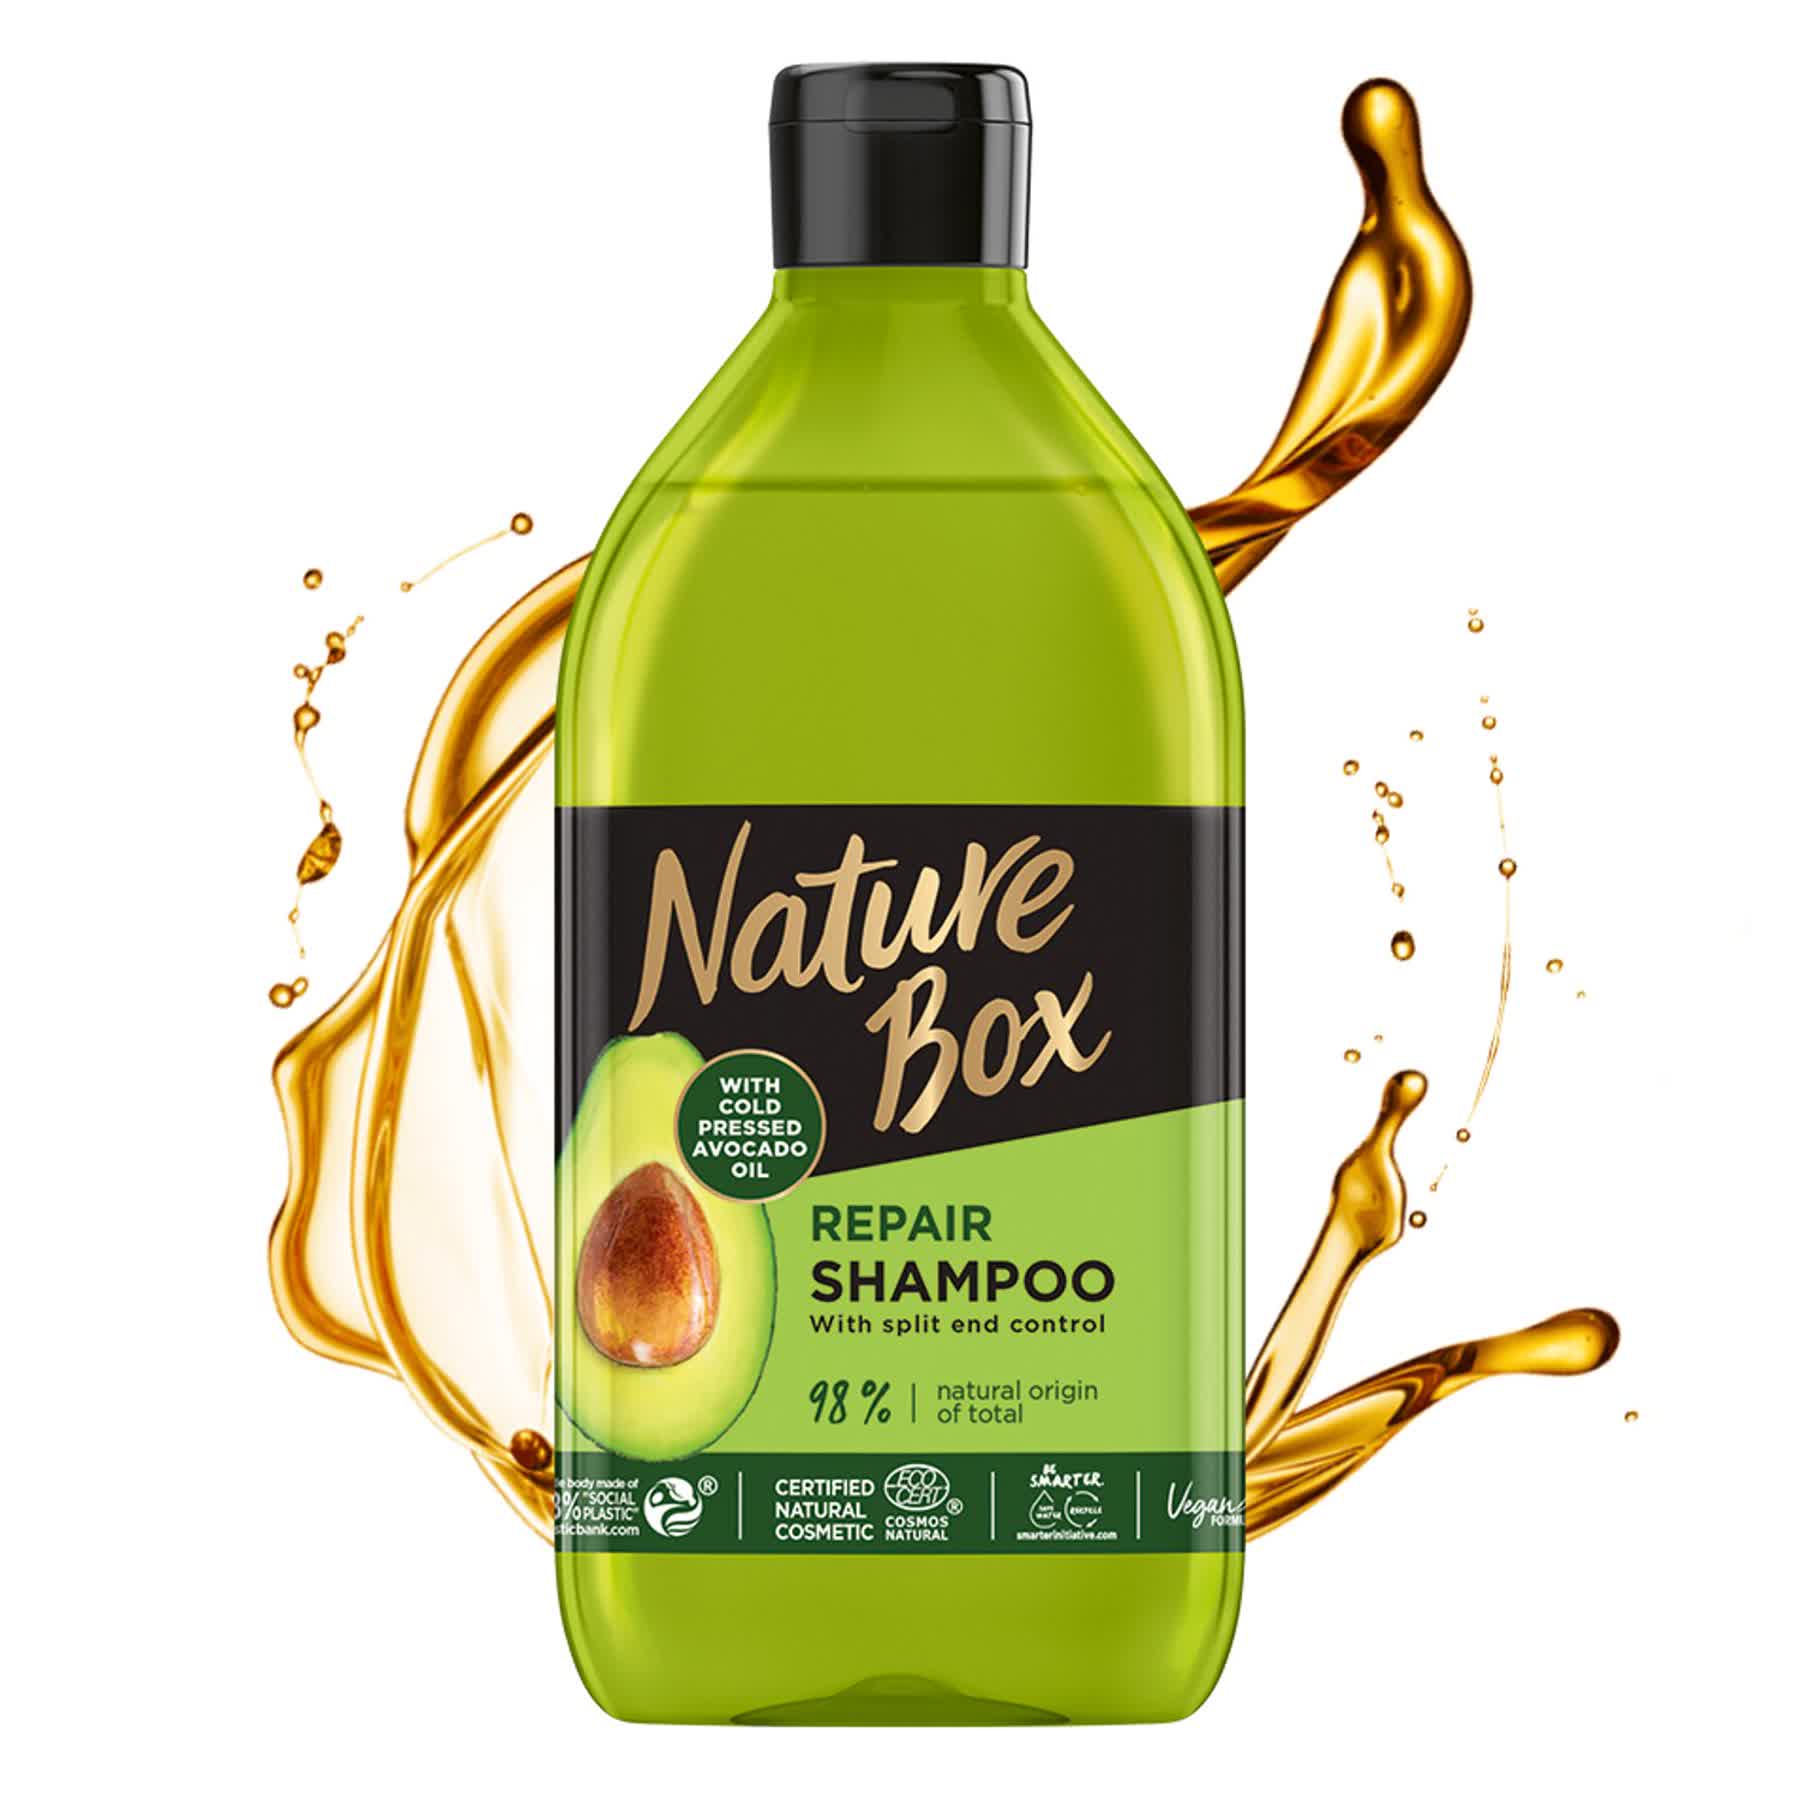 Шампунь Nature Box для восстановления волос и против секущихся кончиков, с маслом авокадо холодного отжима, 385 мл - фото 2